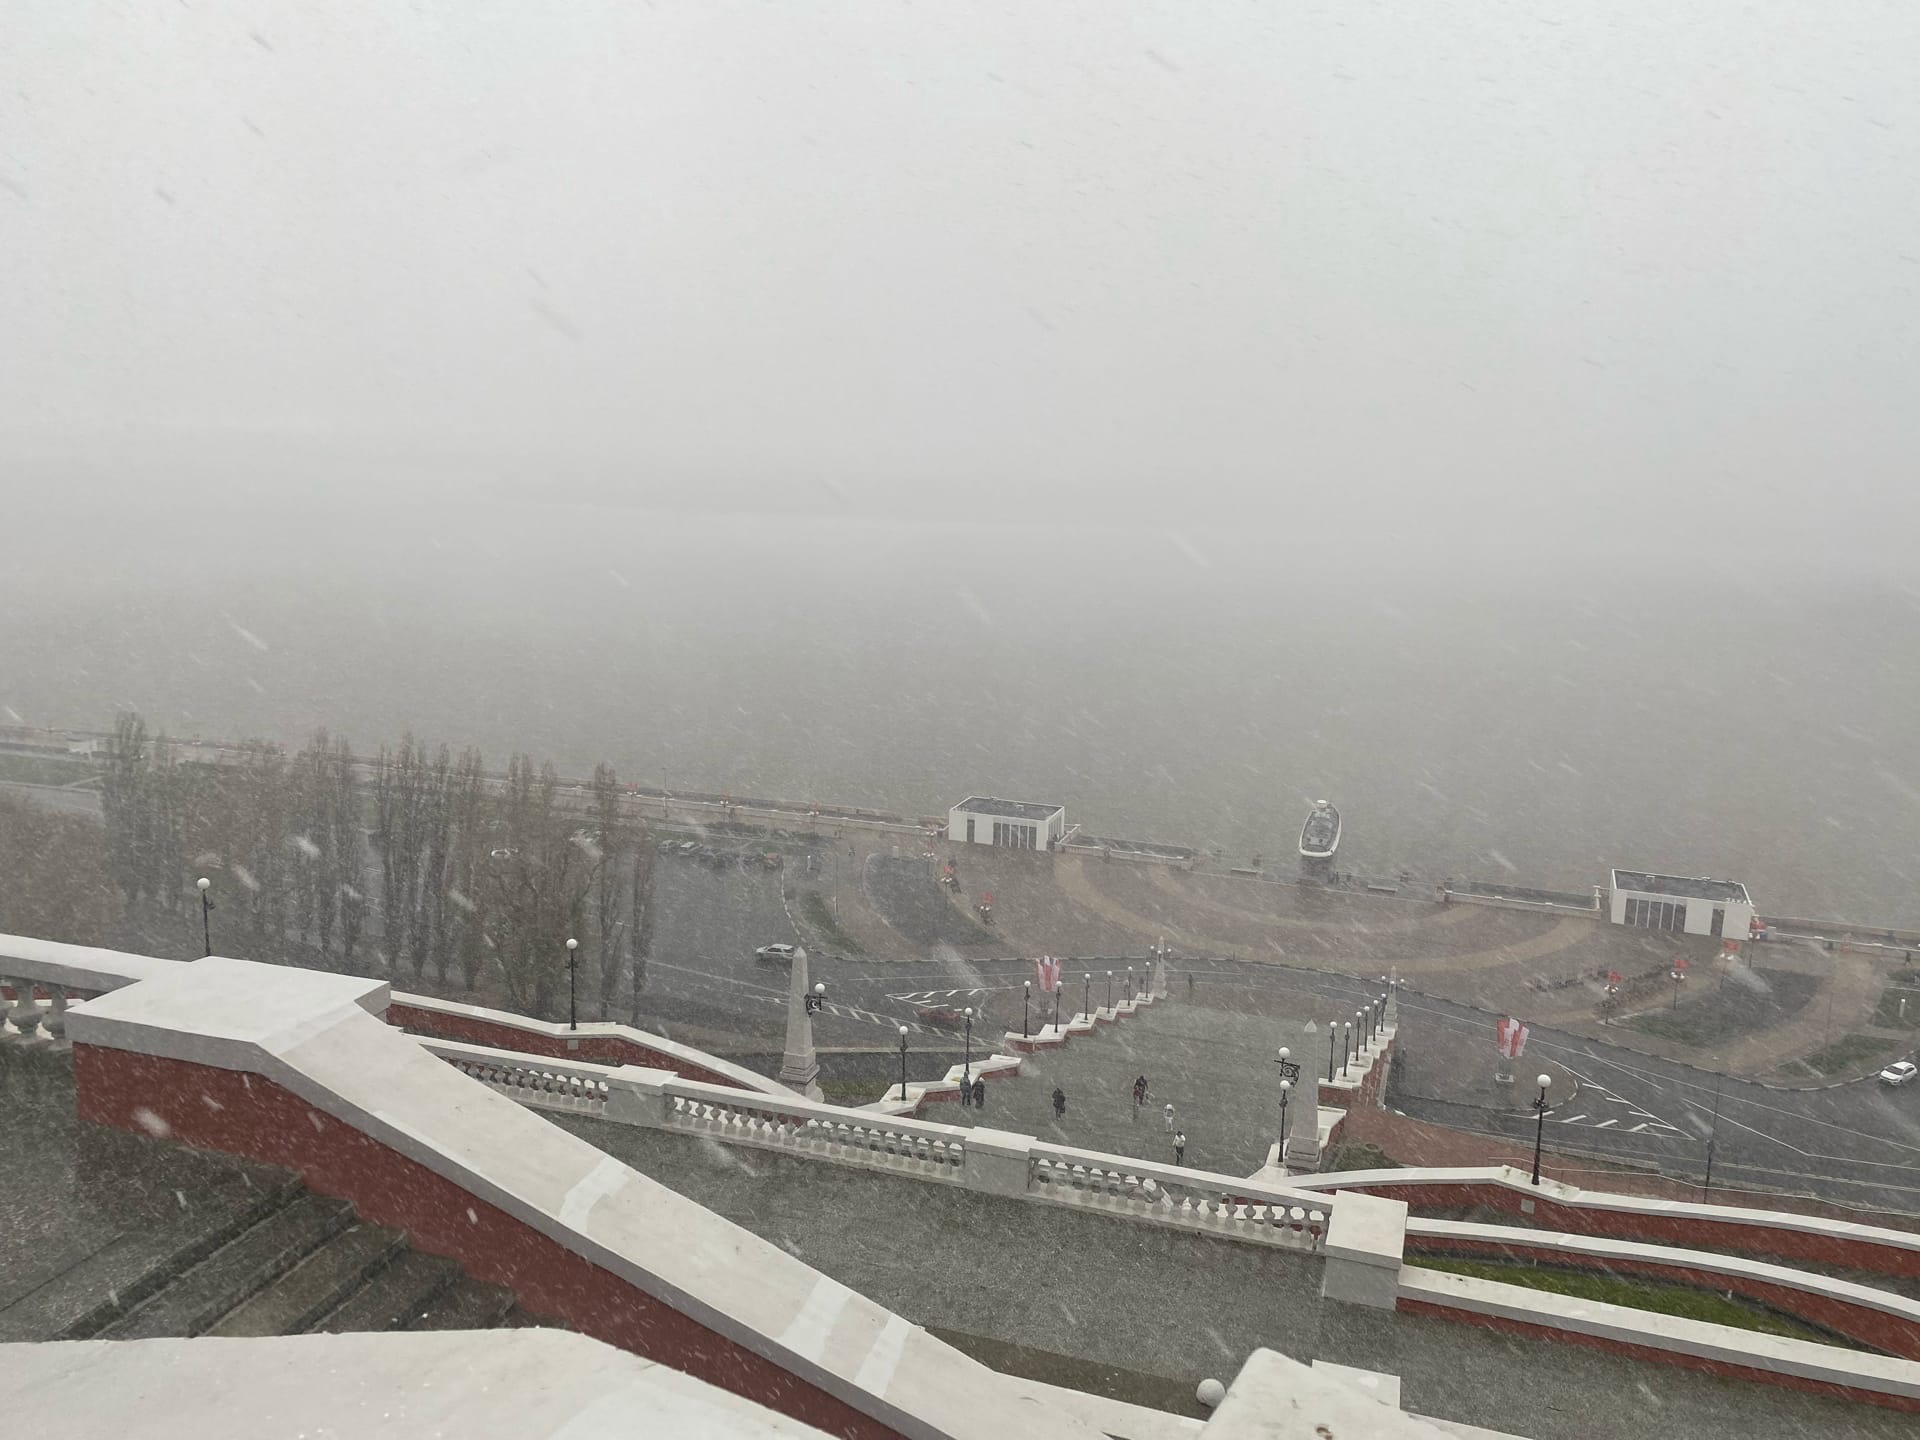 Нижний Новгород занесет мокрым снегом 